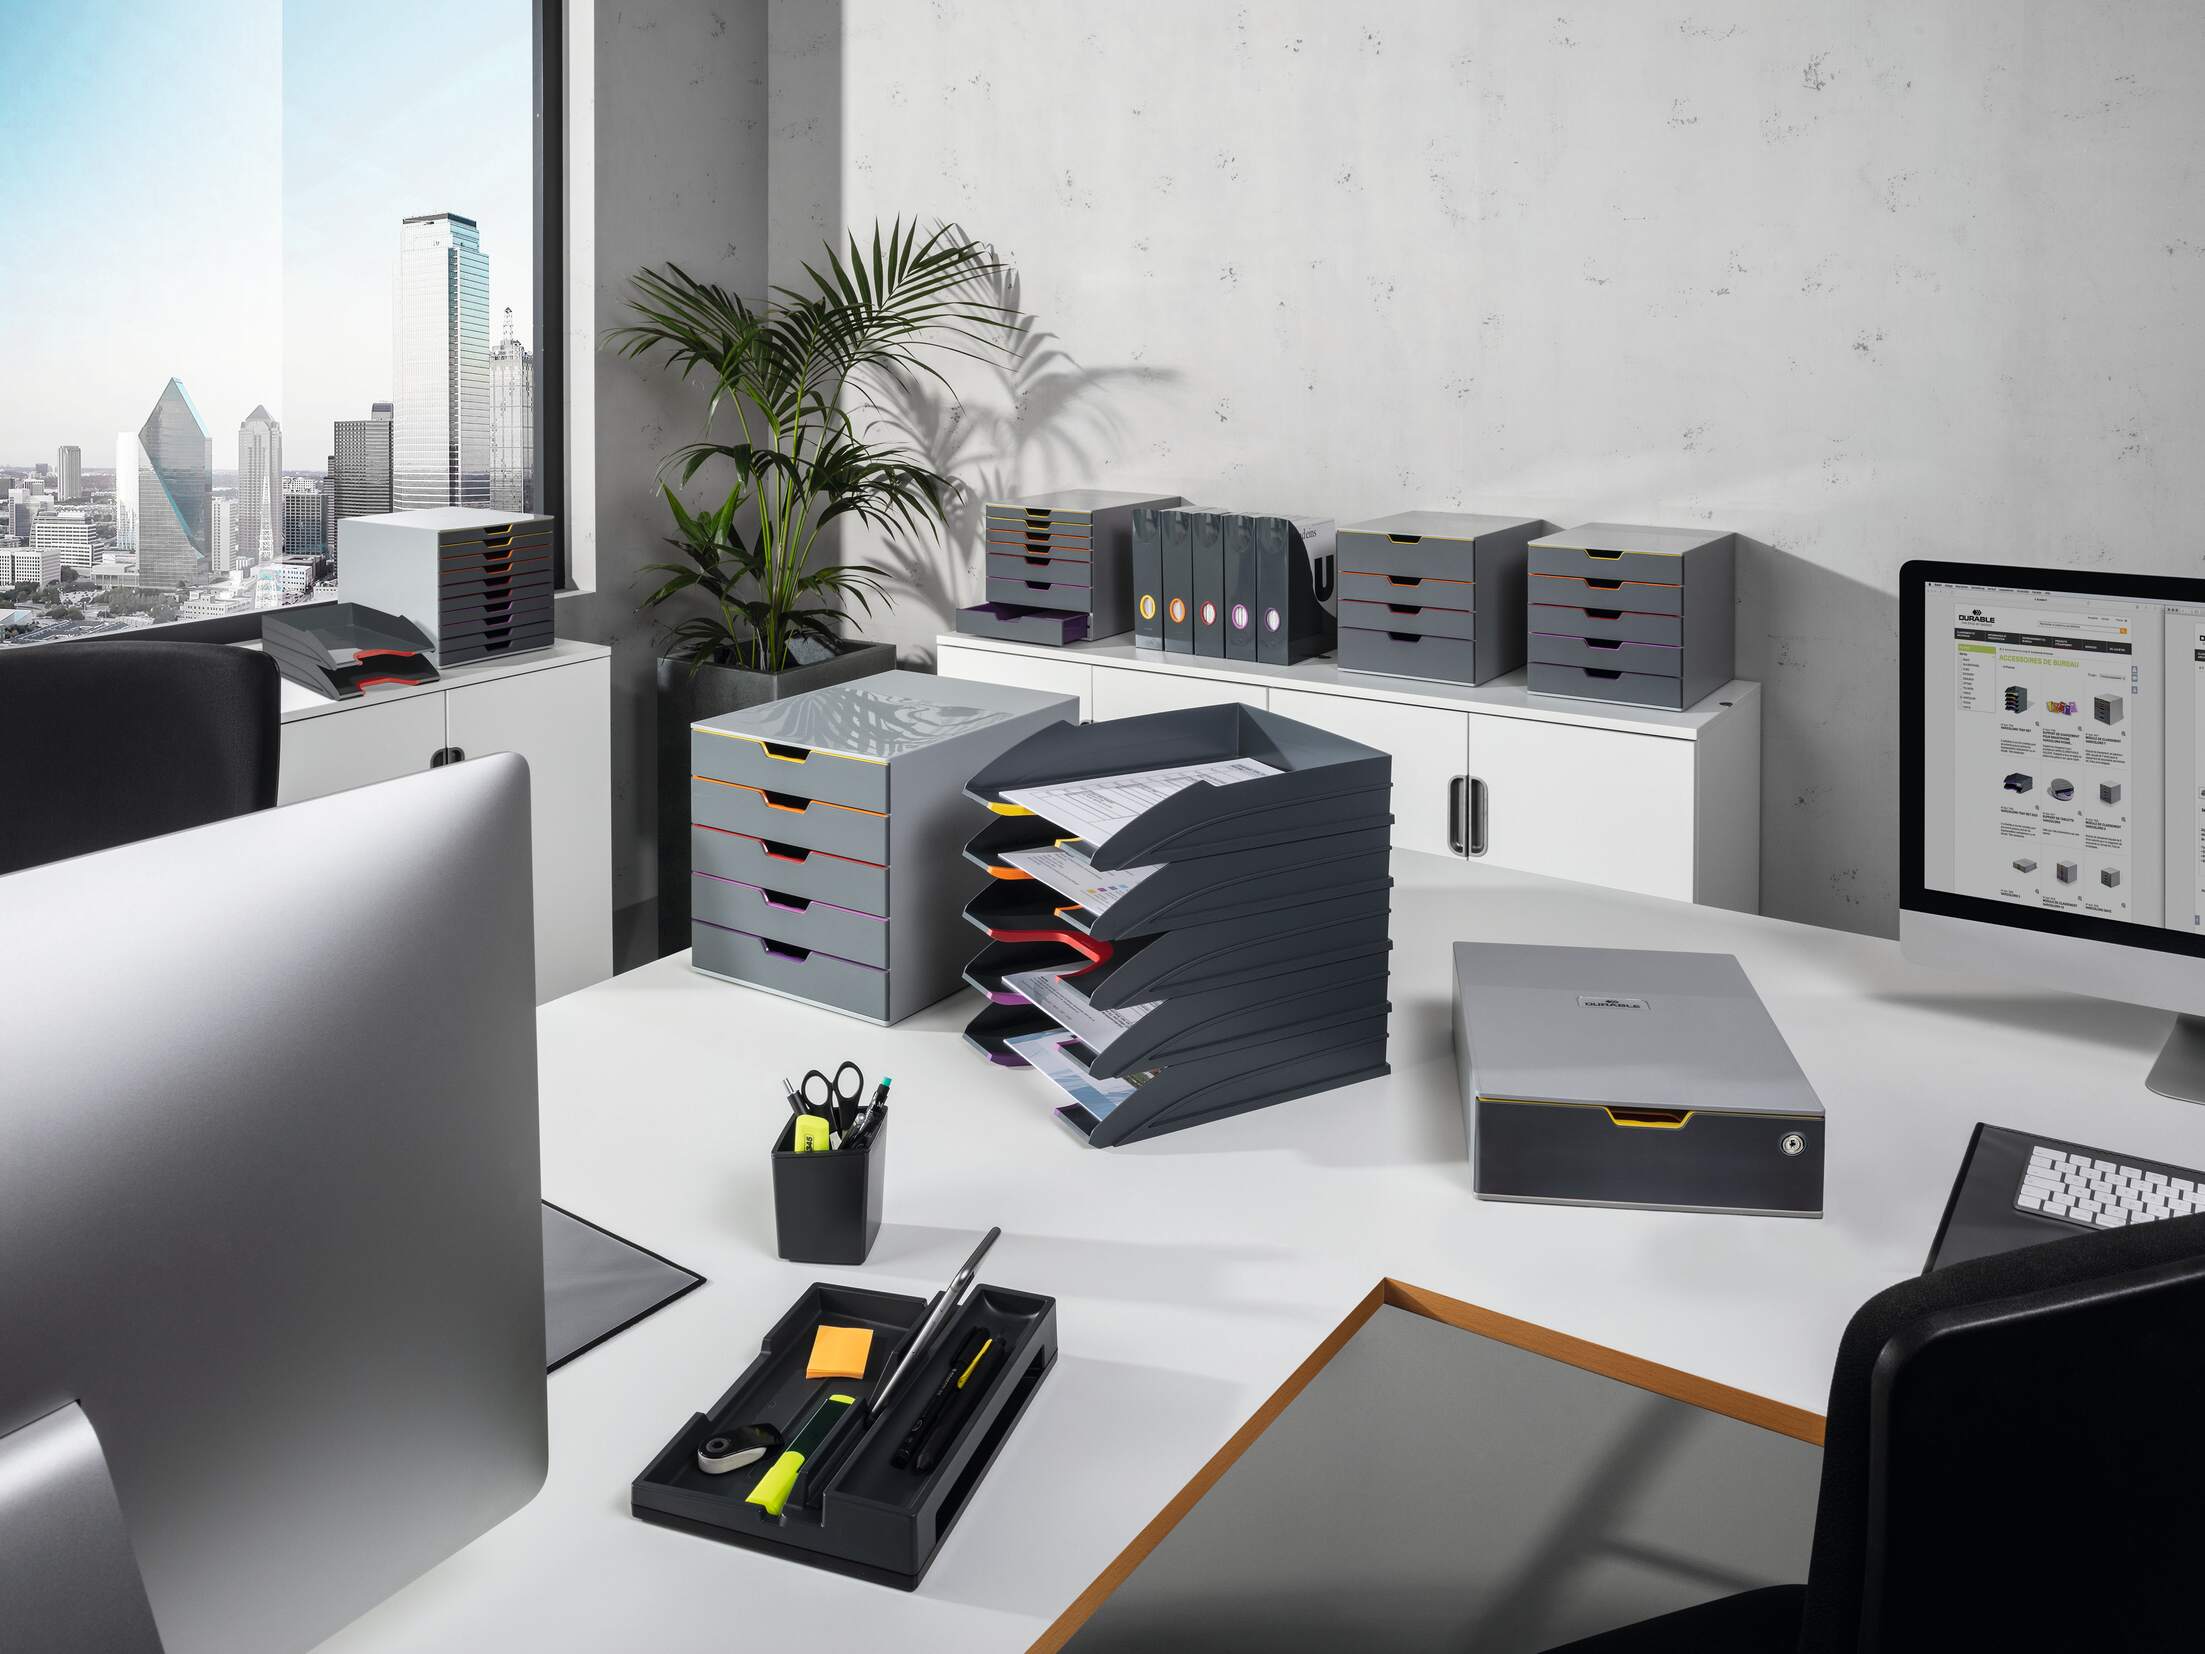 Rakinamas A4 formato stalčius konfidencialiems dokumentams bei asmeniniams daiktams darbo vietoje laikyti